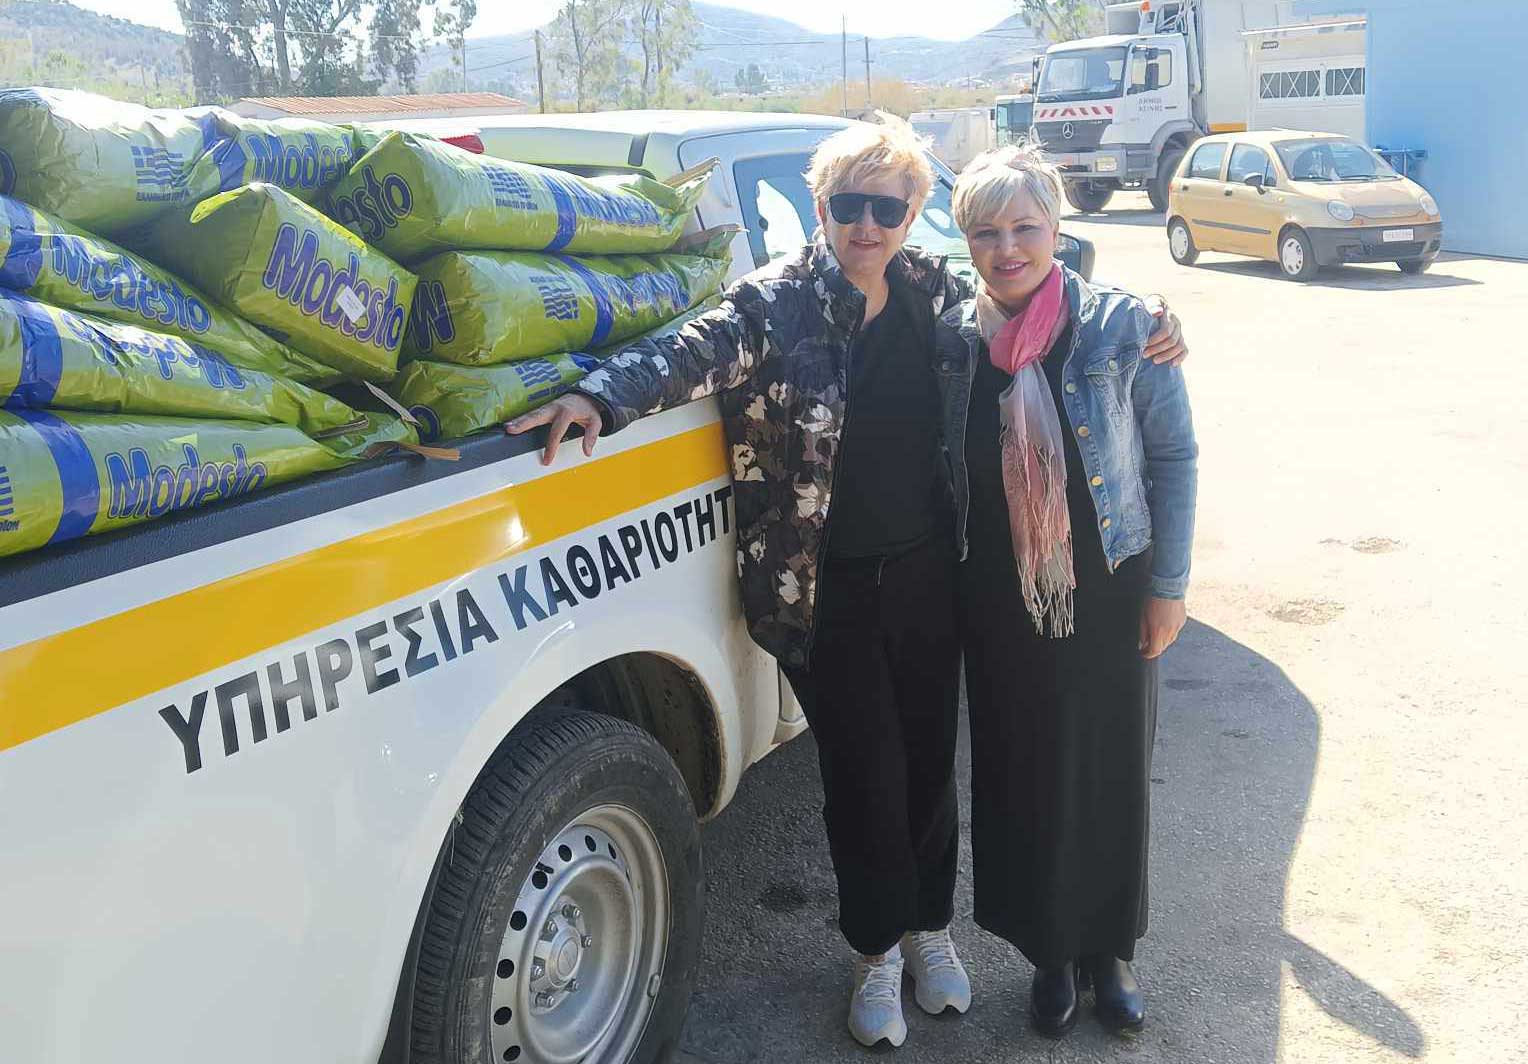 Δωρεάν ζωοτροφές δύο τόνων διέθεσε η κυρία Δήμητρα Κατσαφάδου στο Δήμο Ναυπλιέων